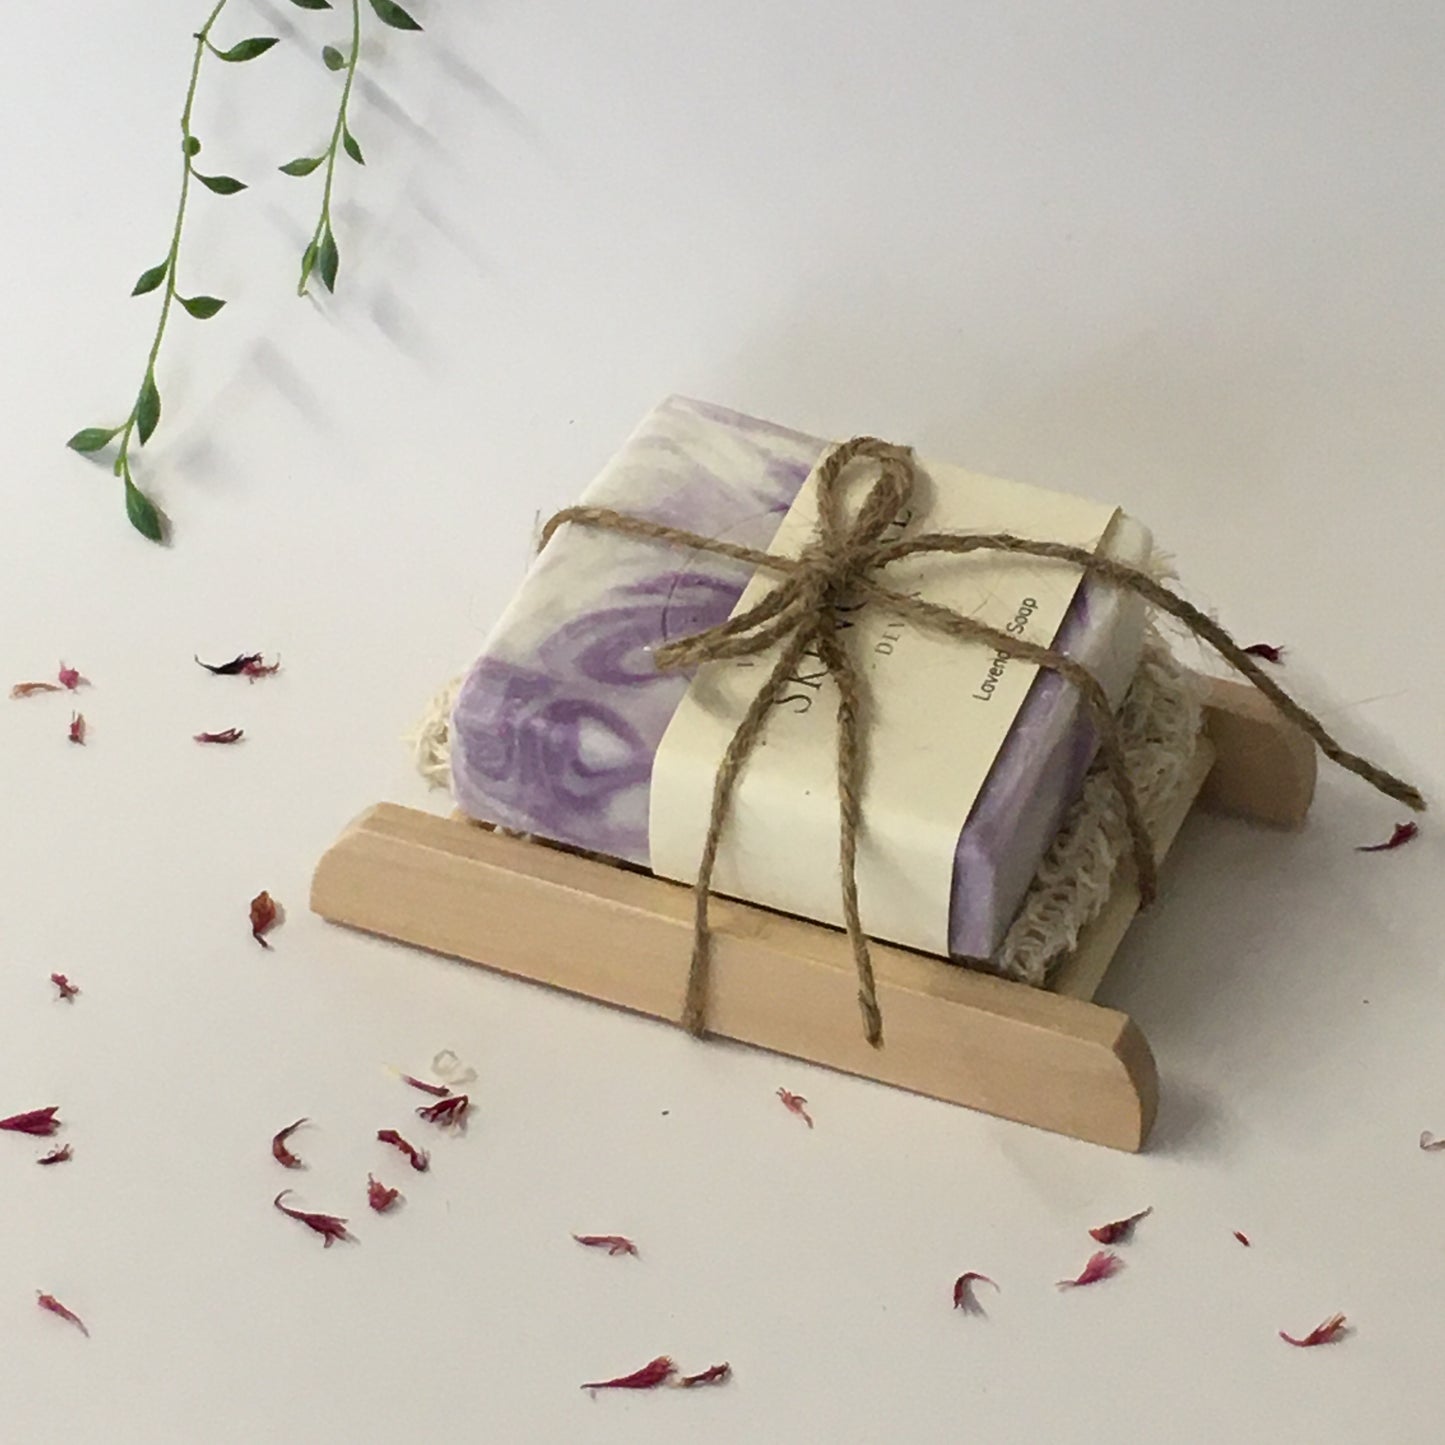 Lavender Gift Sets